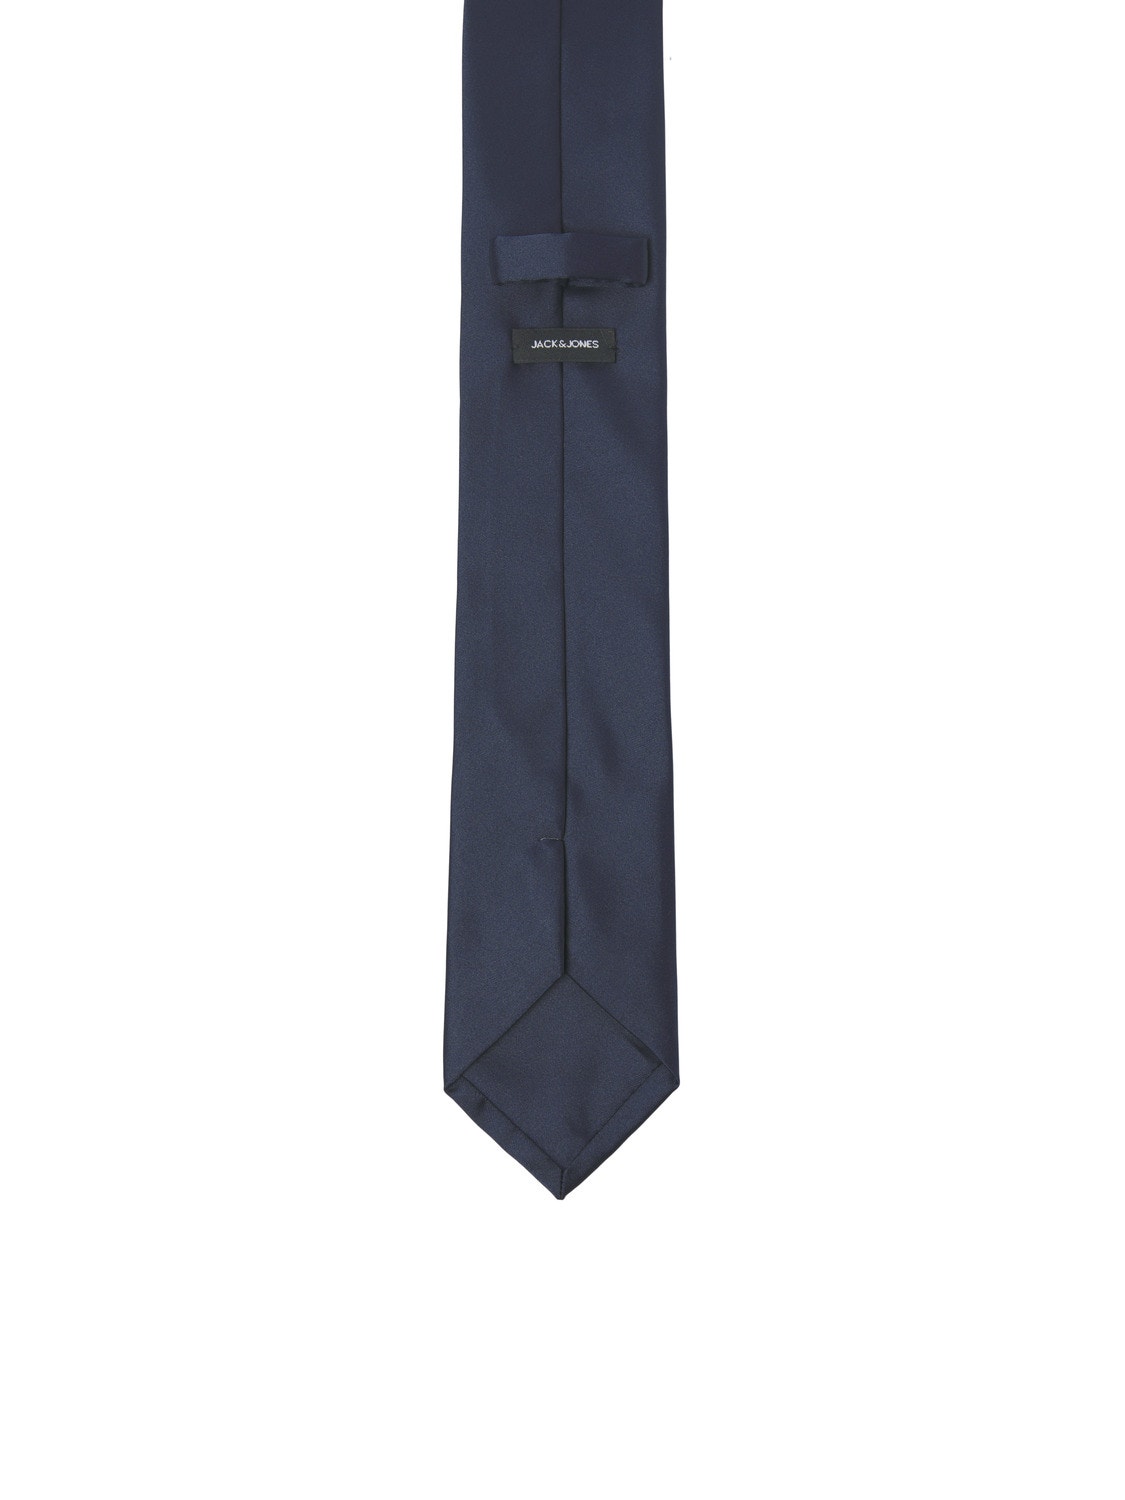 Jack & Jones Tie -Navy Blazer - 12230334